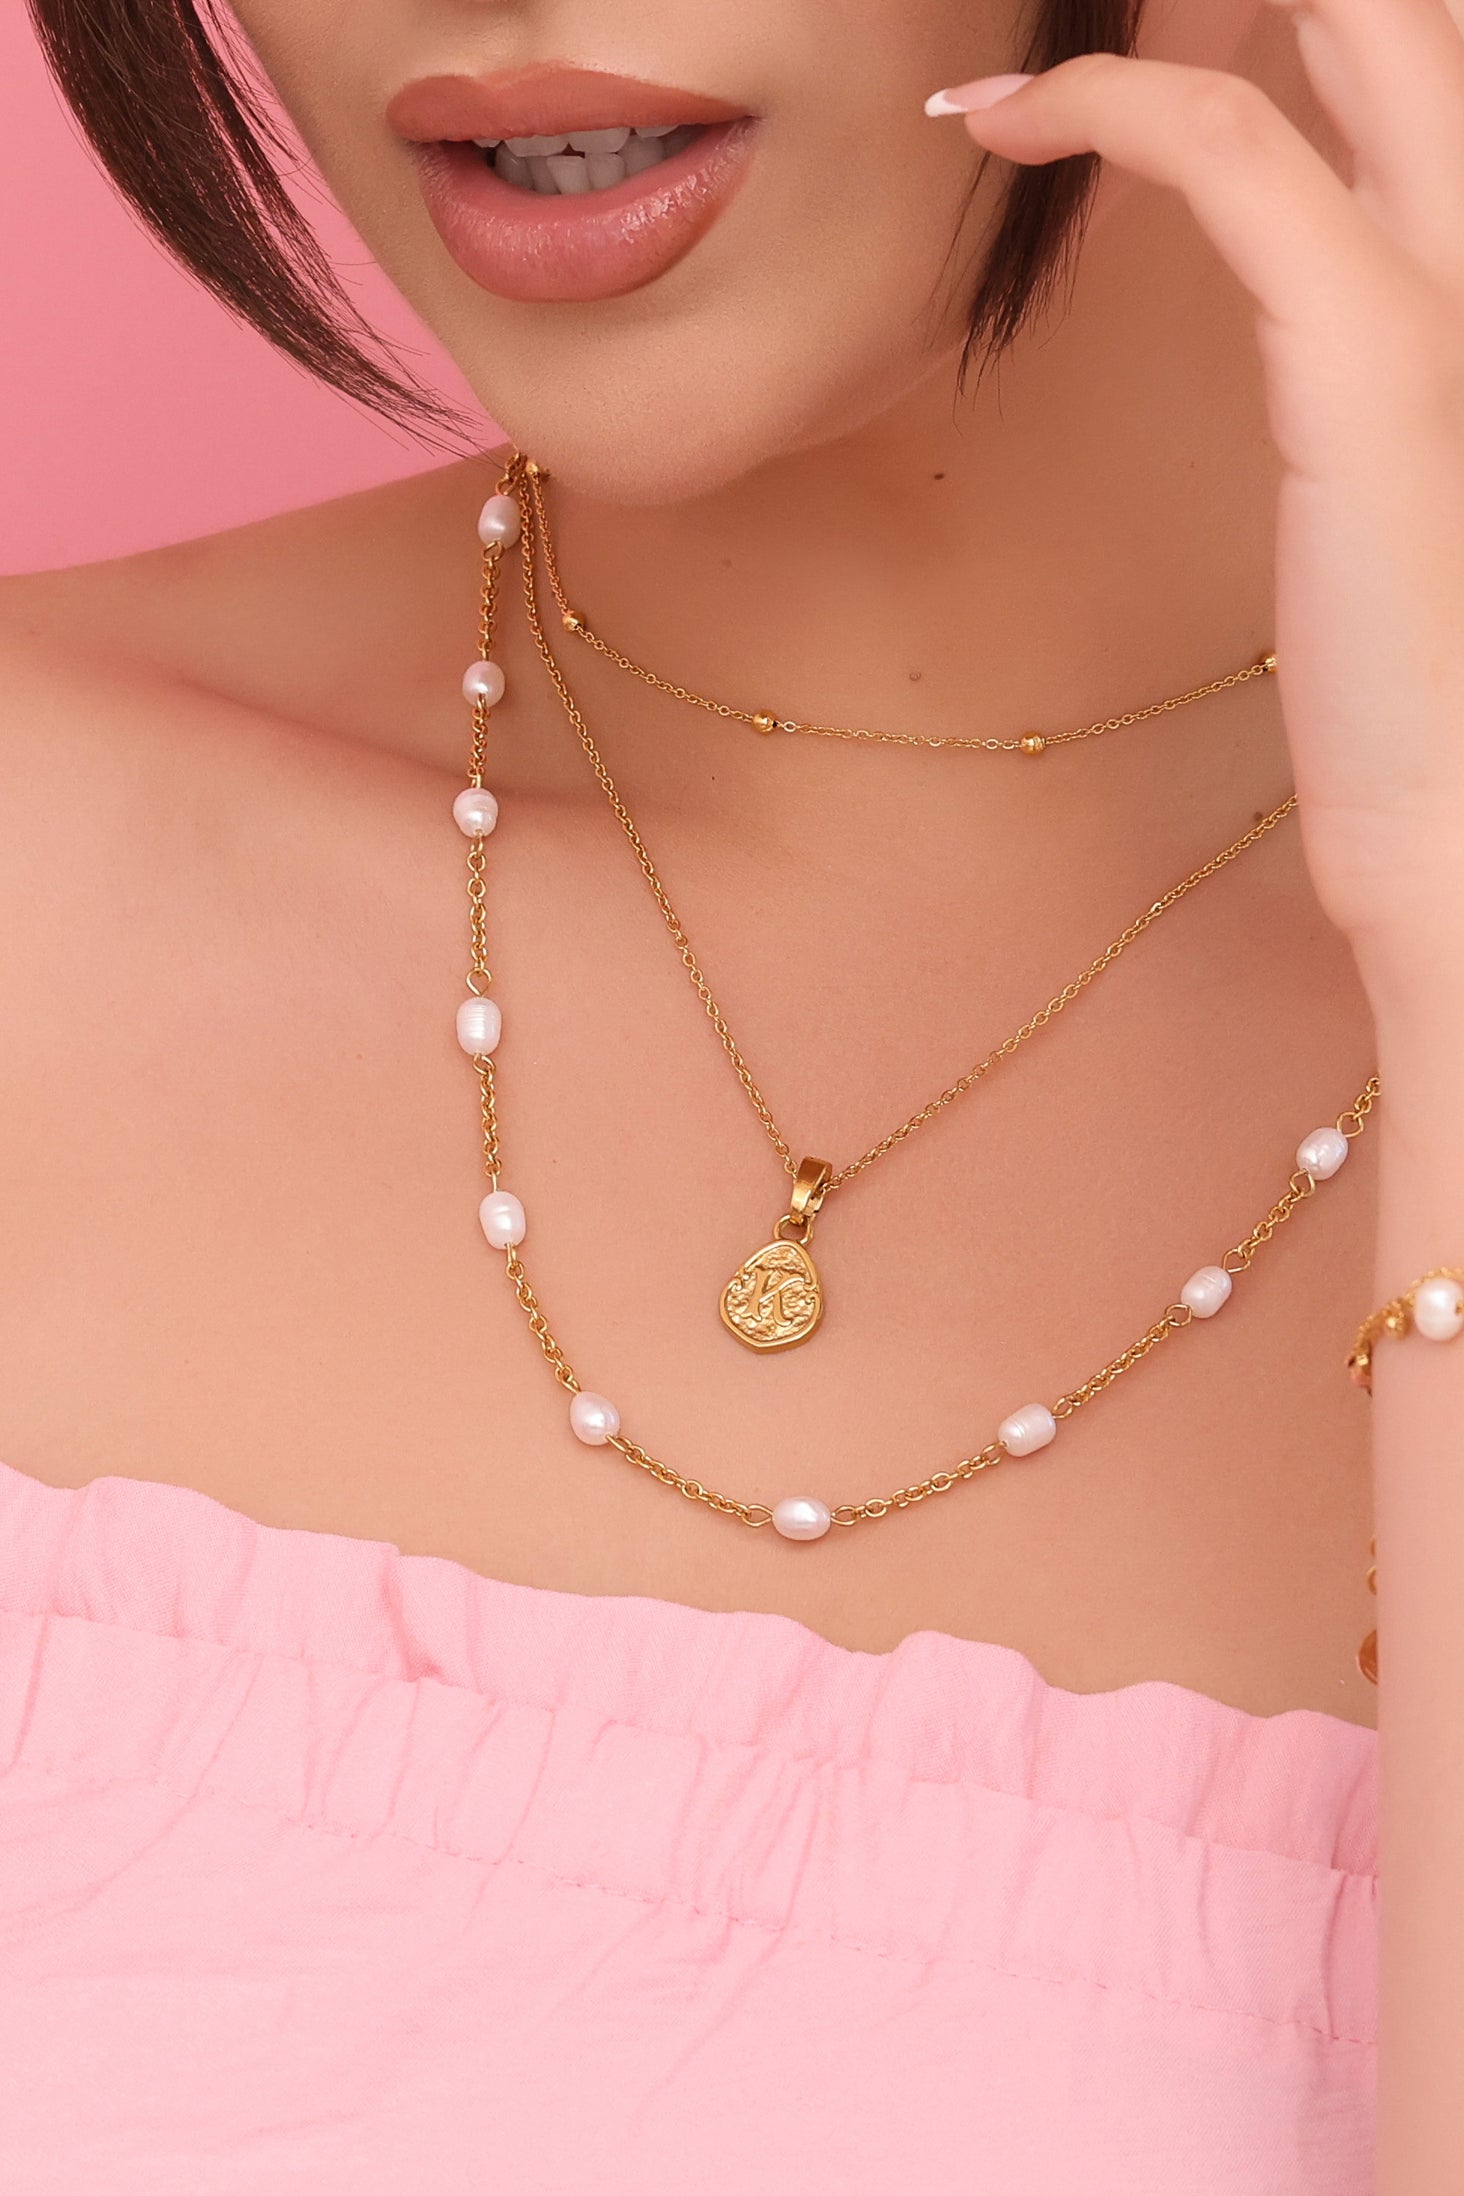 &quot;R&quot; Tberfil Letter Pendant with Petite Adjustable Chain Necklace